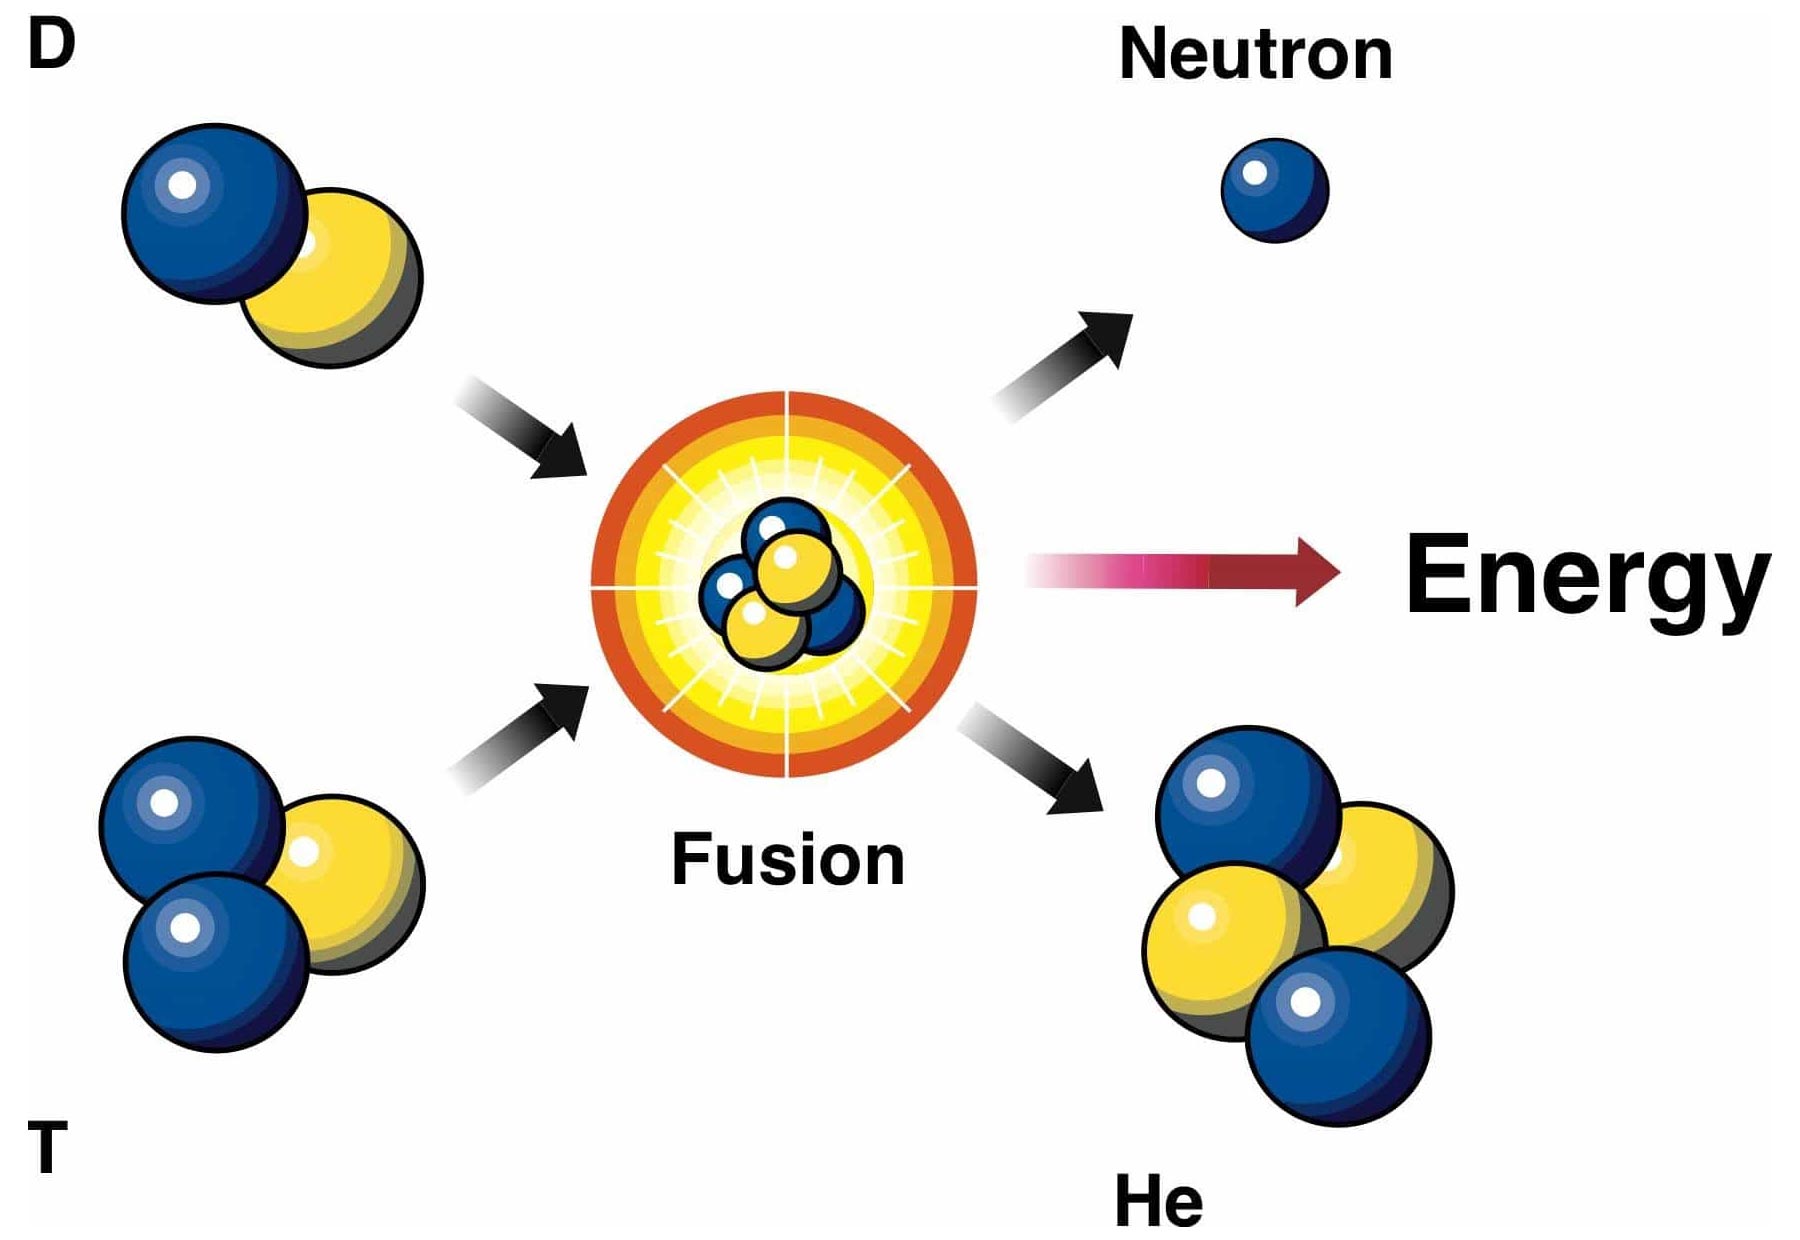 Синтез дейтерия. Реакция ядерного синтеза схема. Схема термоядерного синтеза для дейтерия и трития. Термоядерная реакция дейтерия и трития. Схема реакции термоядерного синтеза.